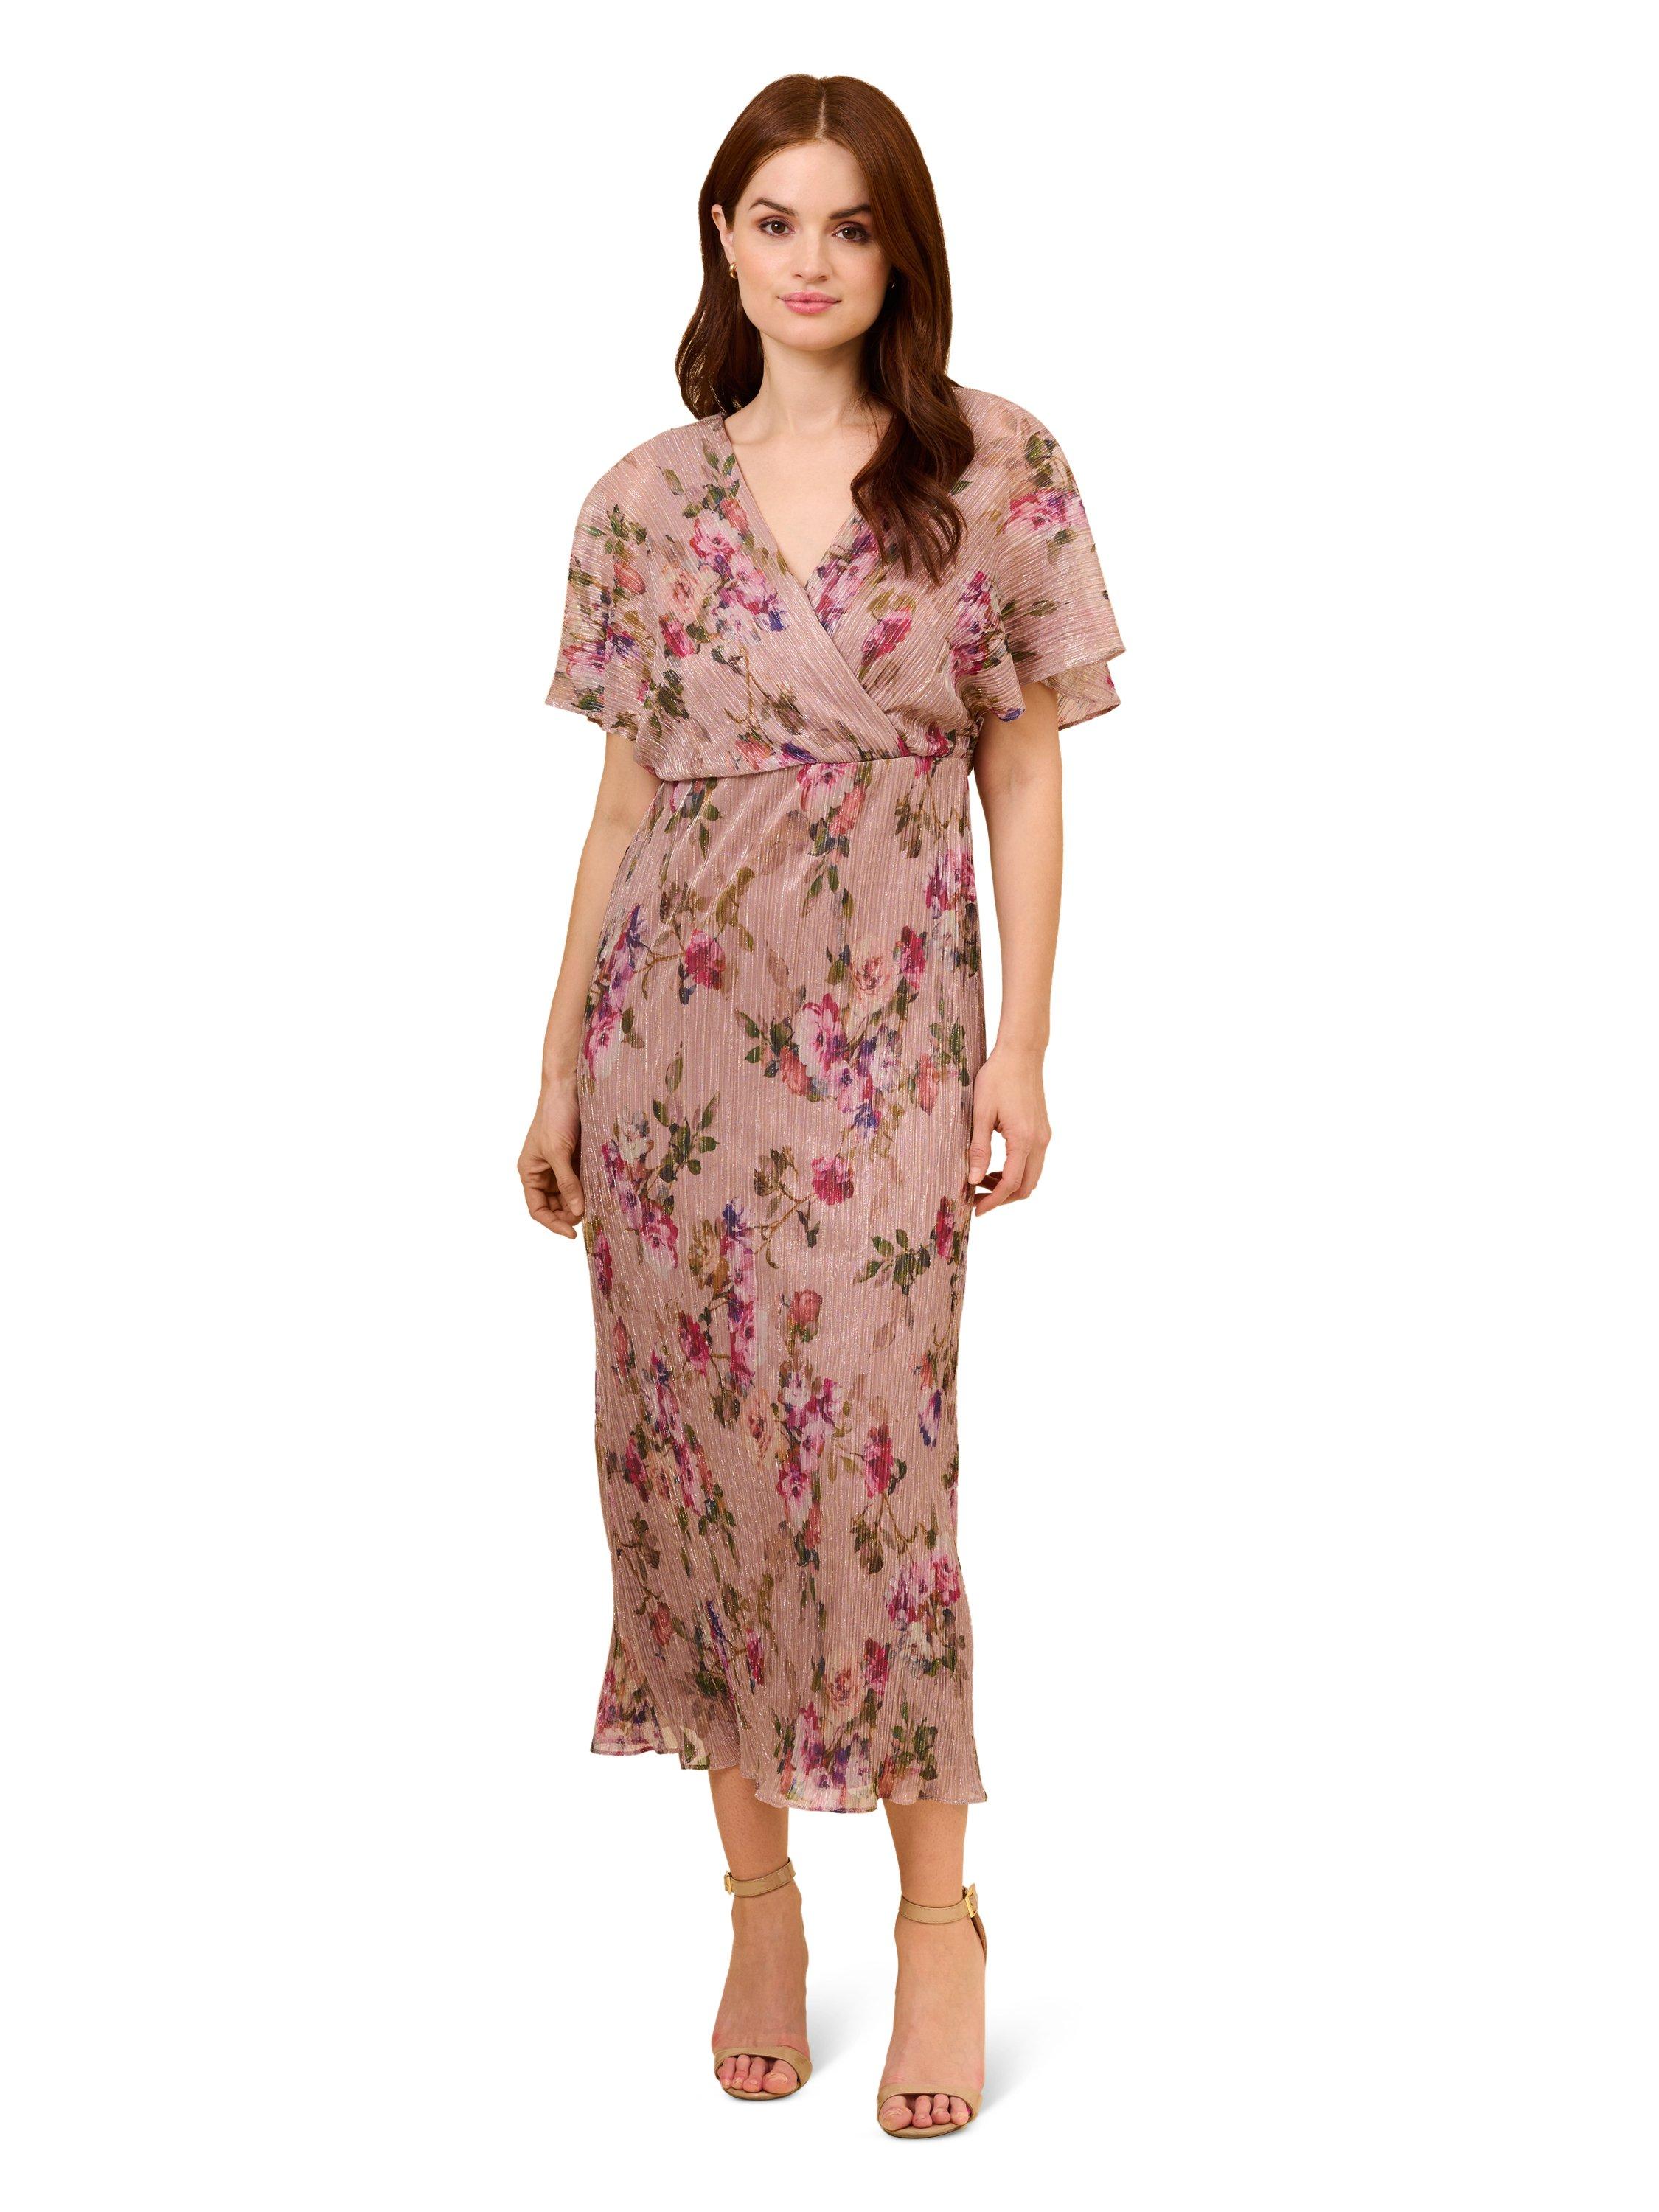 Мятое платье с цветочным принтом и эффектом металлик Adrianna Papell, мультиколор цена и фото